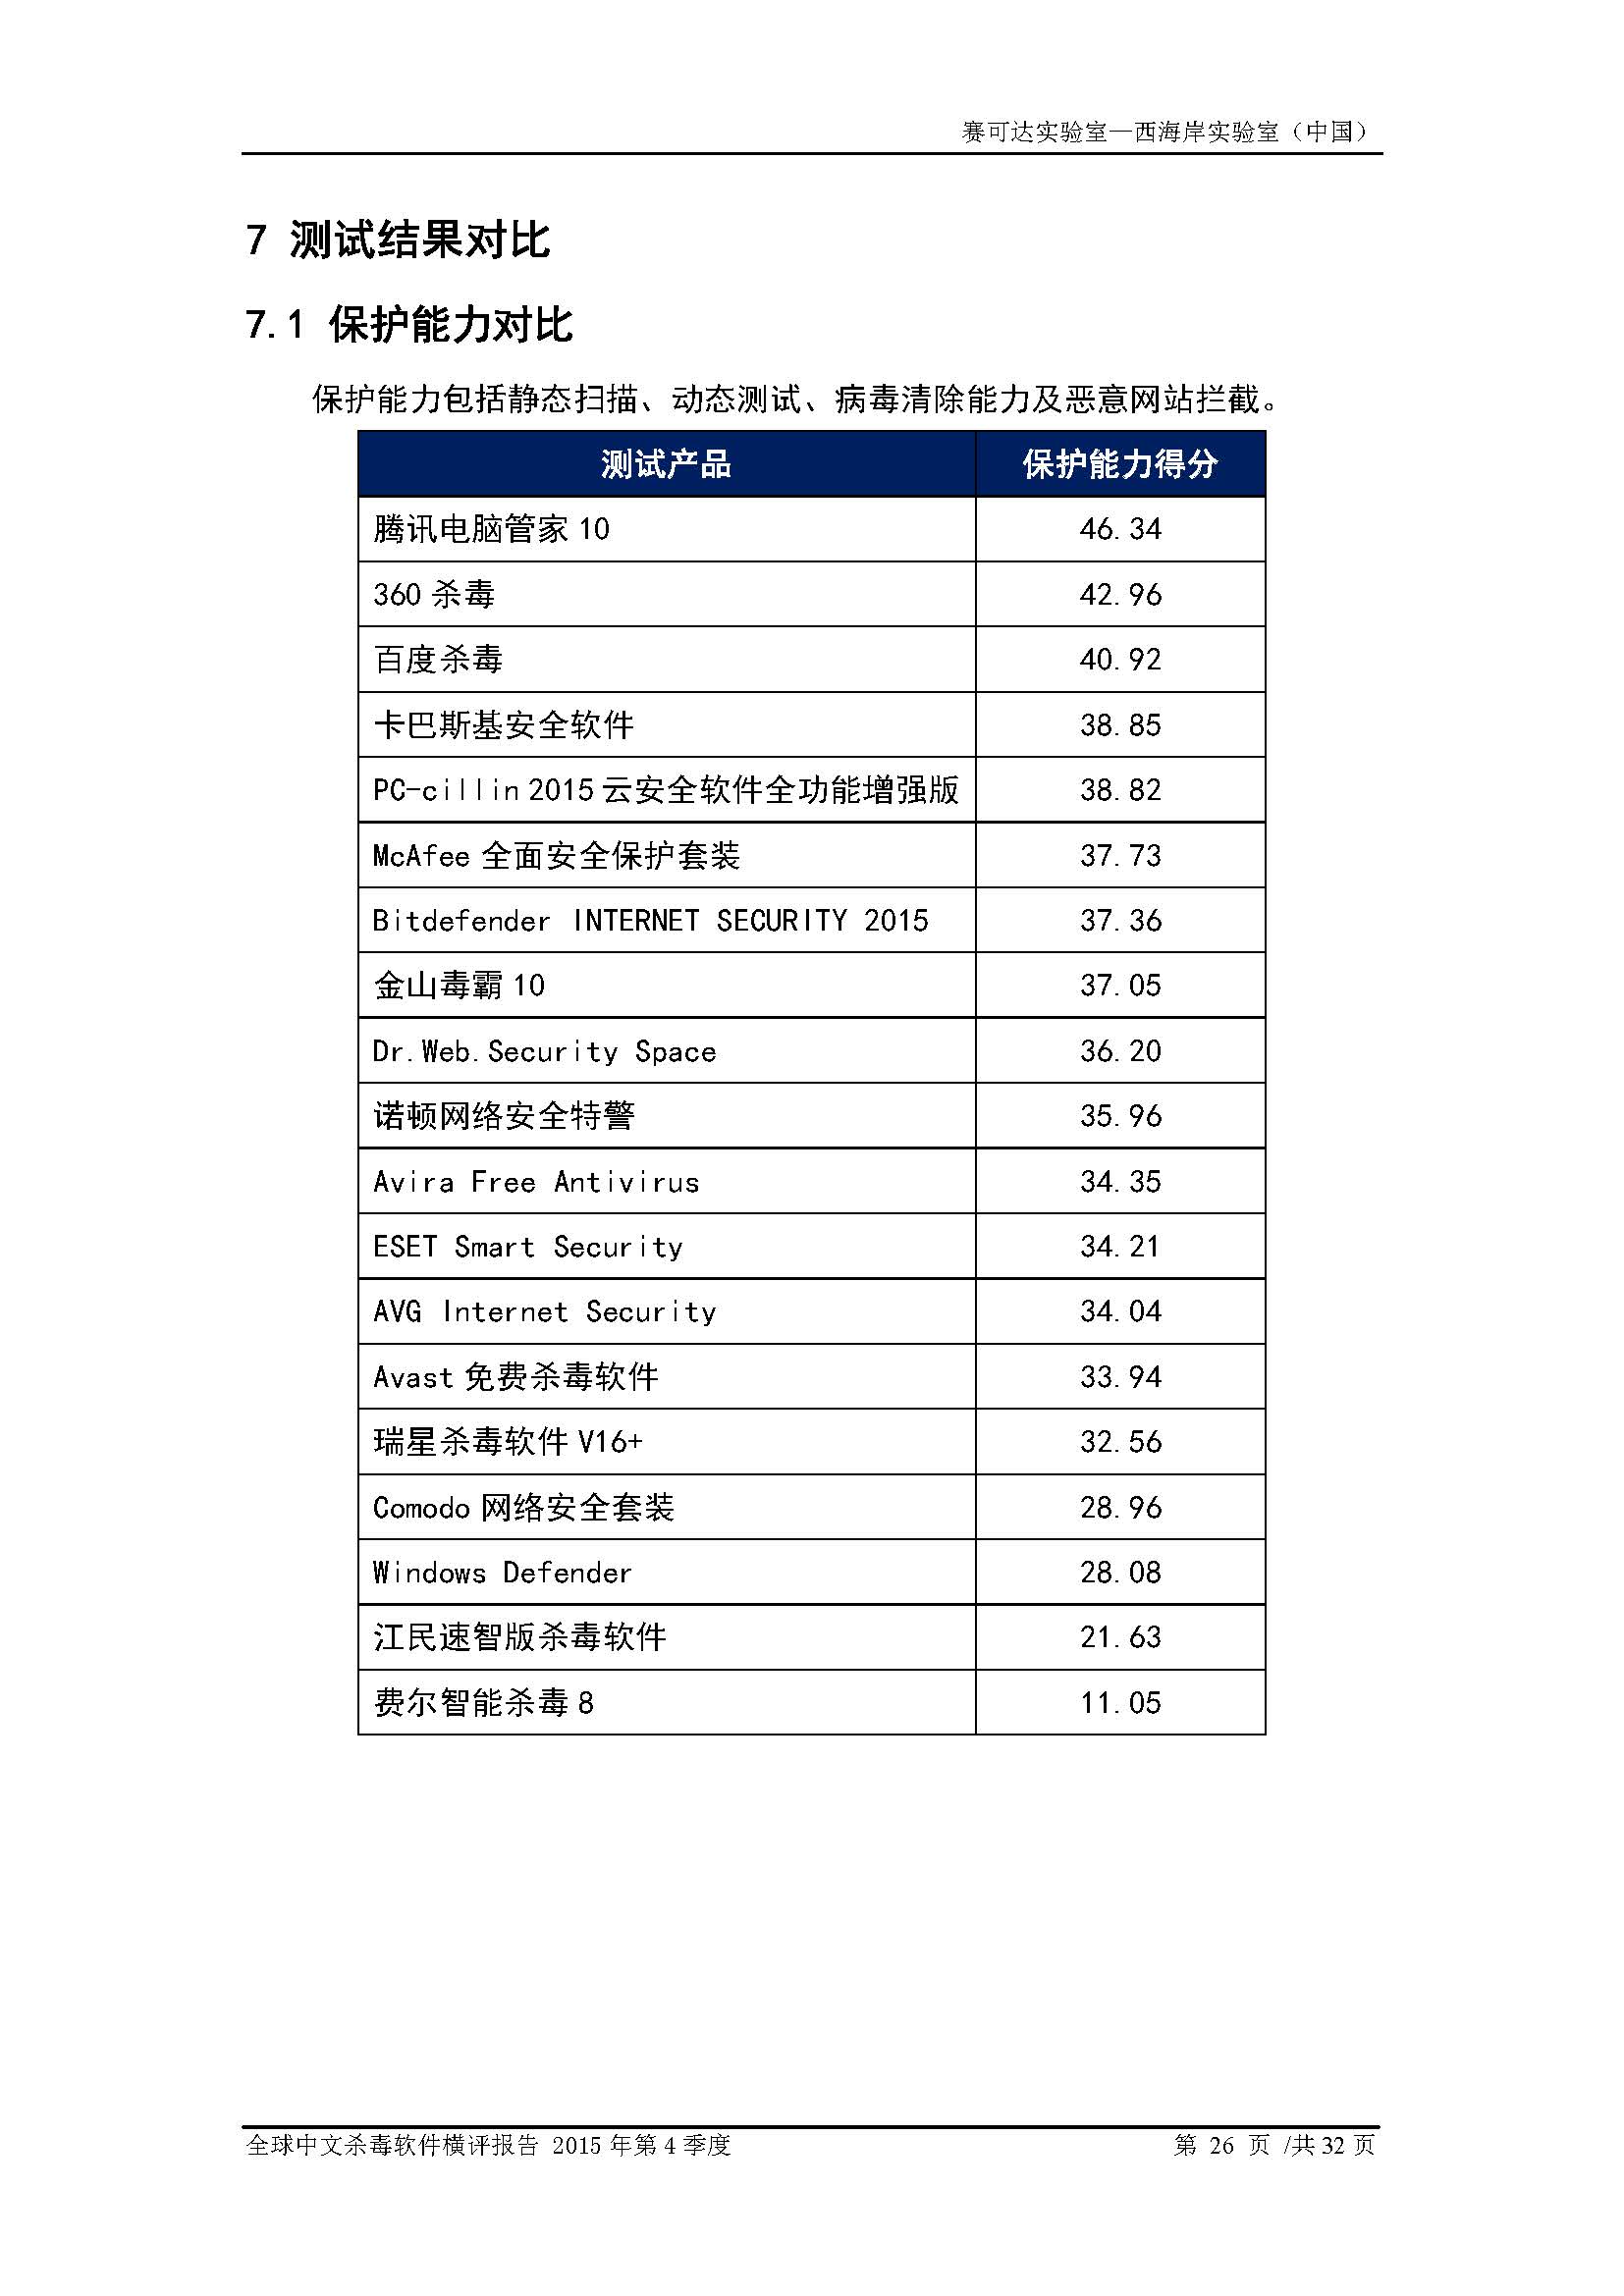 中文PC杀毒软件横评测试报告- Windows 8.1【中文版】.pdf (_Page_28.jpg